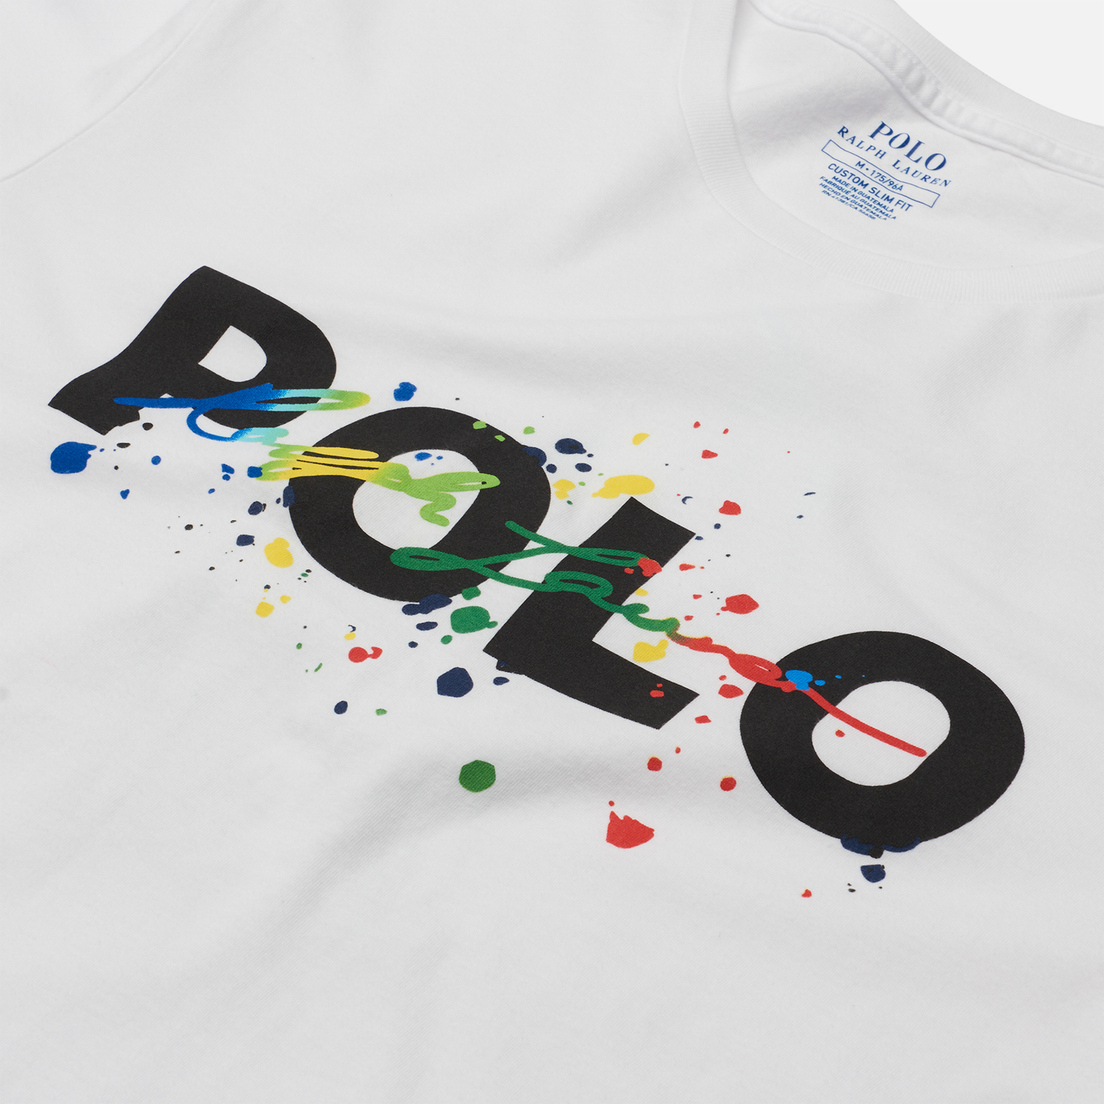 Polo Ralph Lauren Мужская футболка Classic Fit Paint Splatter Logo